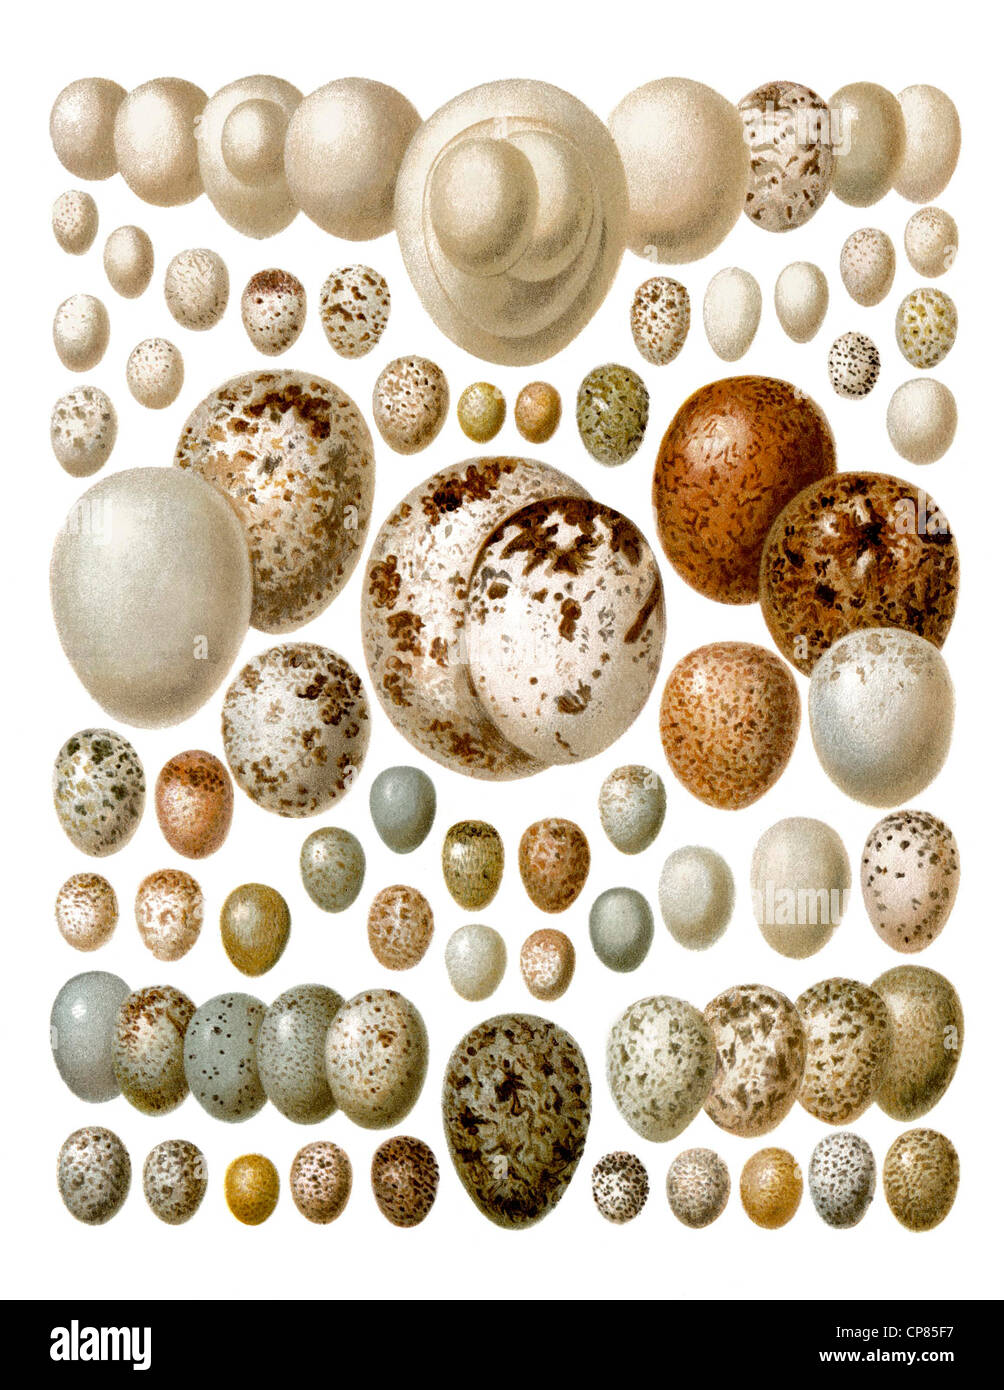 European birds' eggs, Zeichnerische Darstellung, Eier von Europäischen Vögeln, aus Meyers Konversations-Lexikon, 1889 Stock Photo